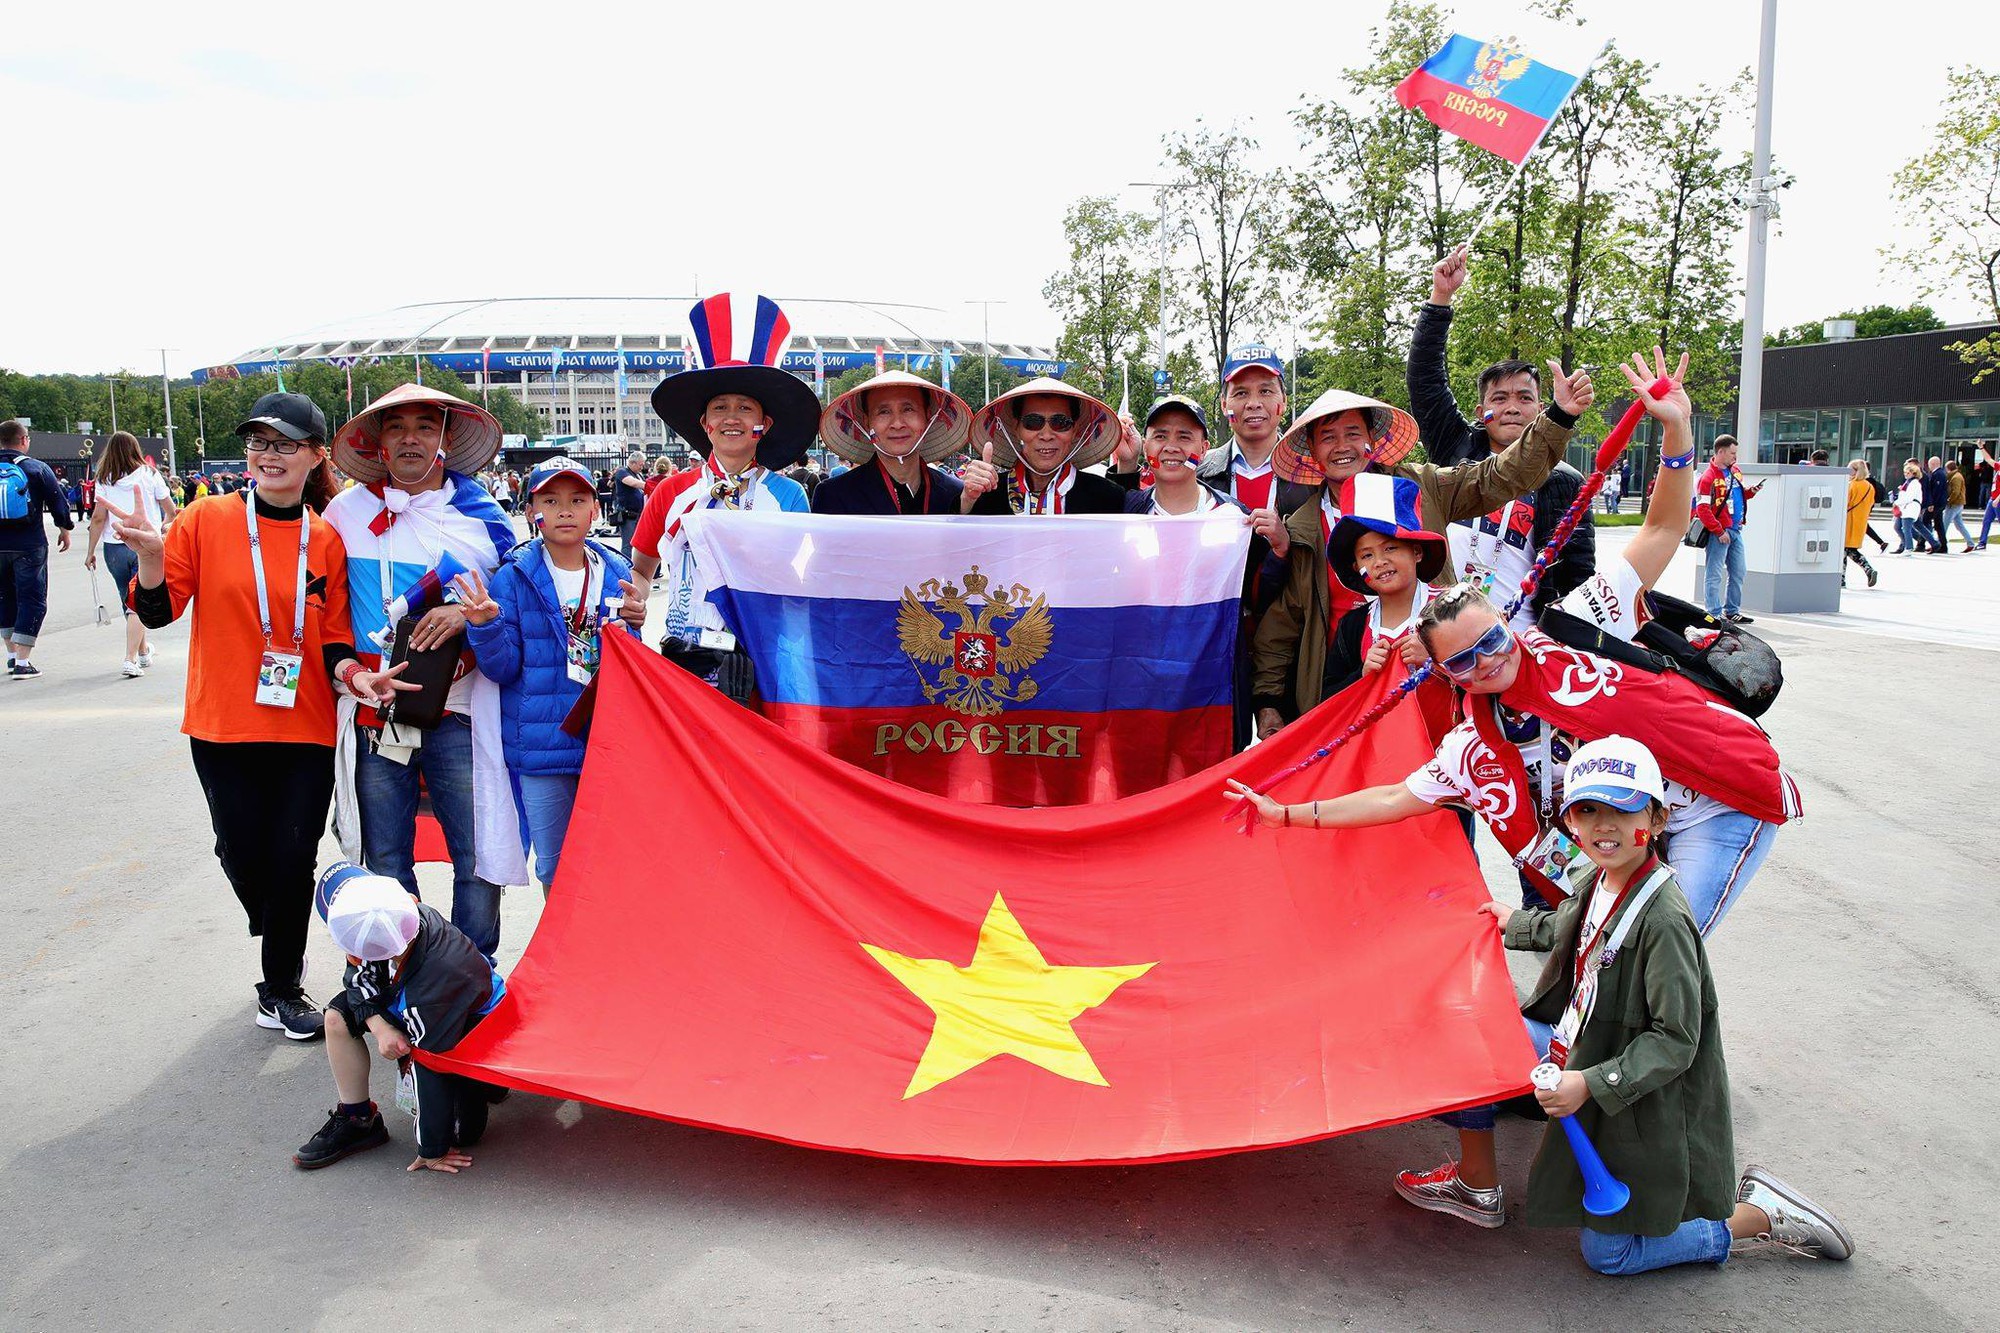 World Cup 2018 vừa là một sự kiện thể thao đỉnh cao và cũng là niềm tự hào của người Việt. Dù không có đại diện nào tham dự trong số các đội bóng, tinh thần vận động viên và khán giả Việt Nam luôn tỏa sáng trong mỗi trận đấu. Hãy theo dõi những hình ảnh đầy cảm xúc và phấn khích trong suốt giải đấu này.